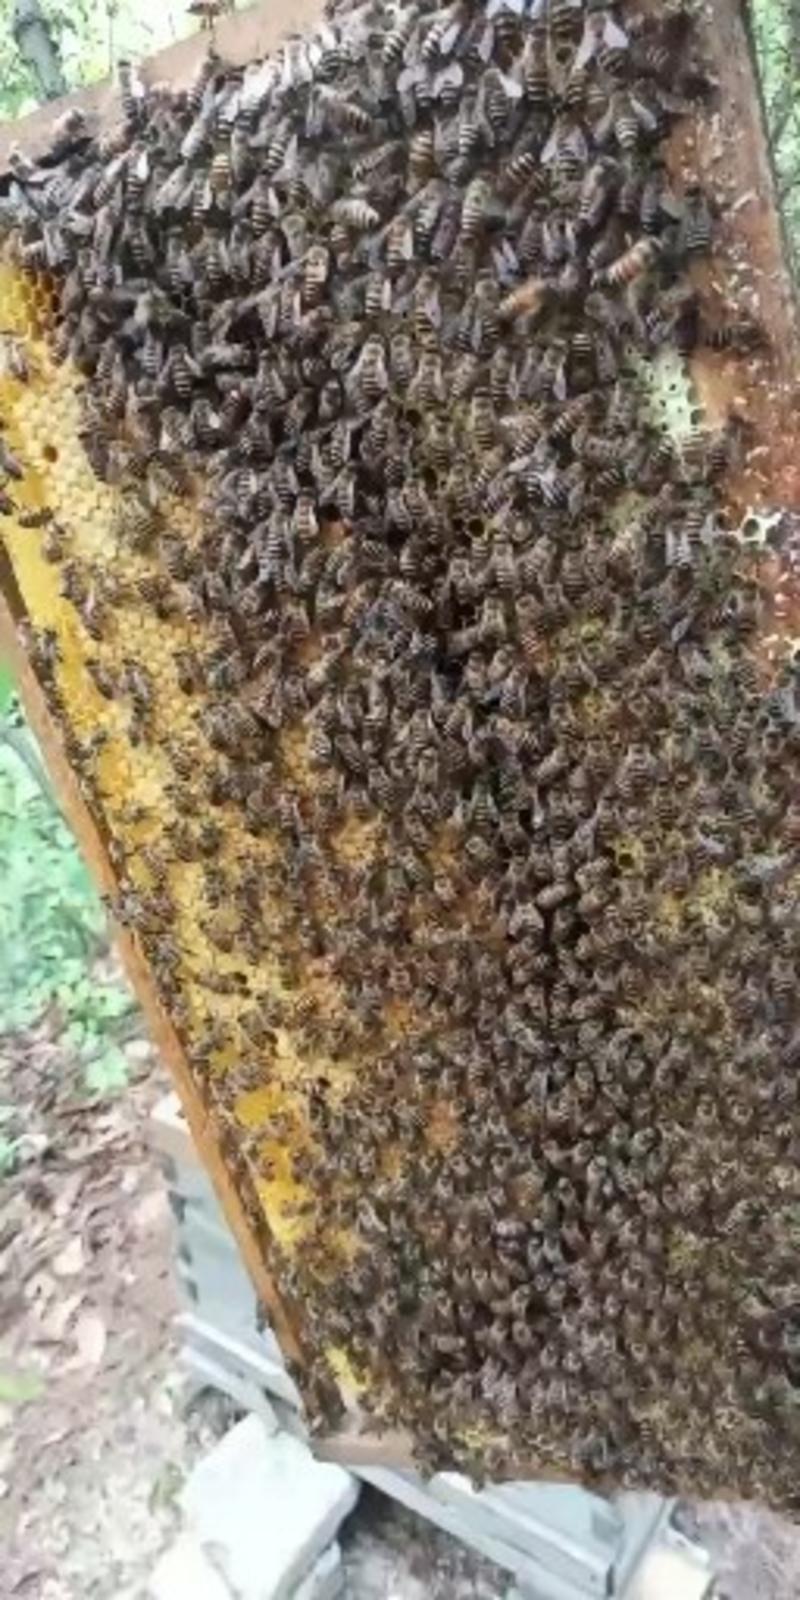 中华小蜜蜂，三至六脾授粉采蜜兼用型中蜂群。